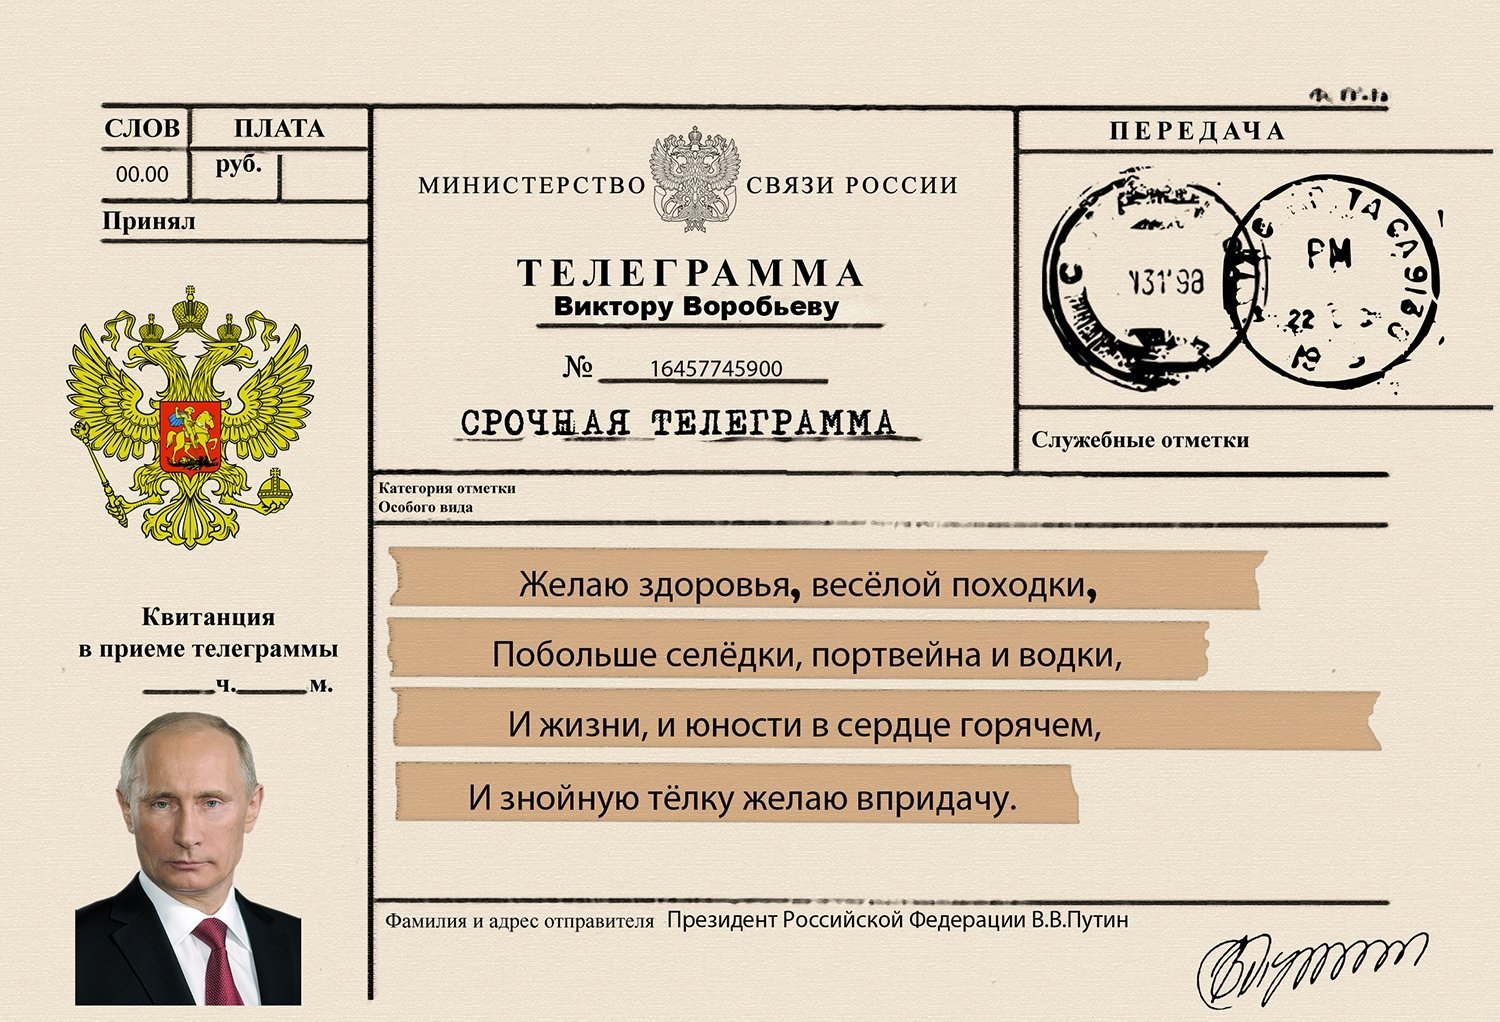 Сайты телеграмма на русском языке фото 90